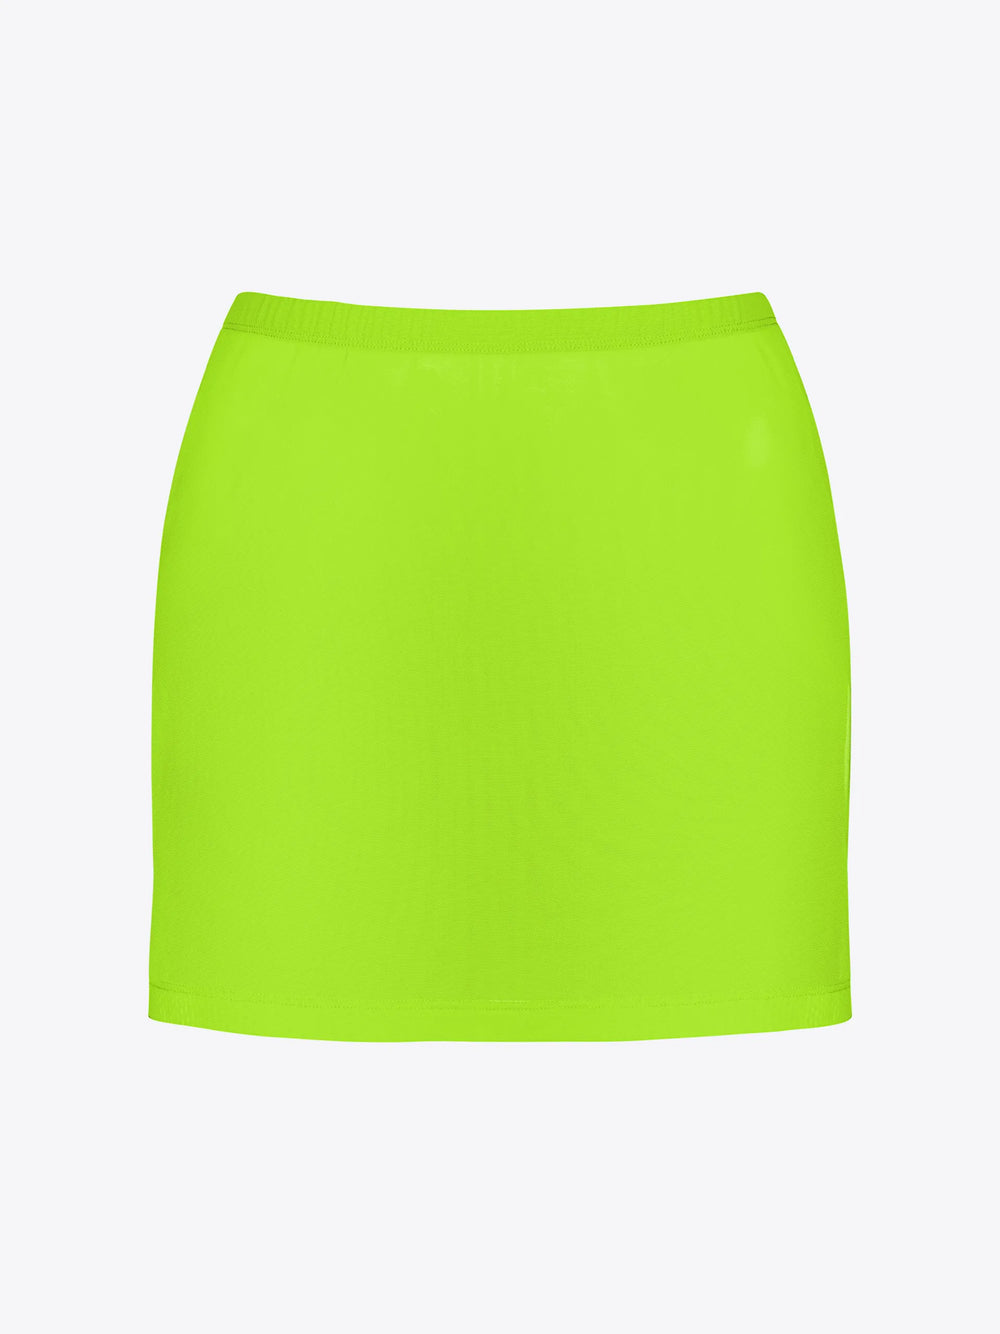 Sunny Skirt